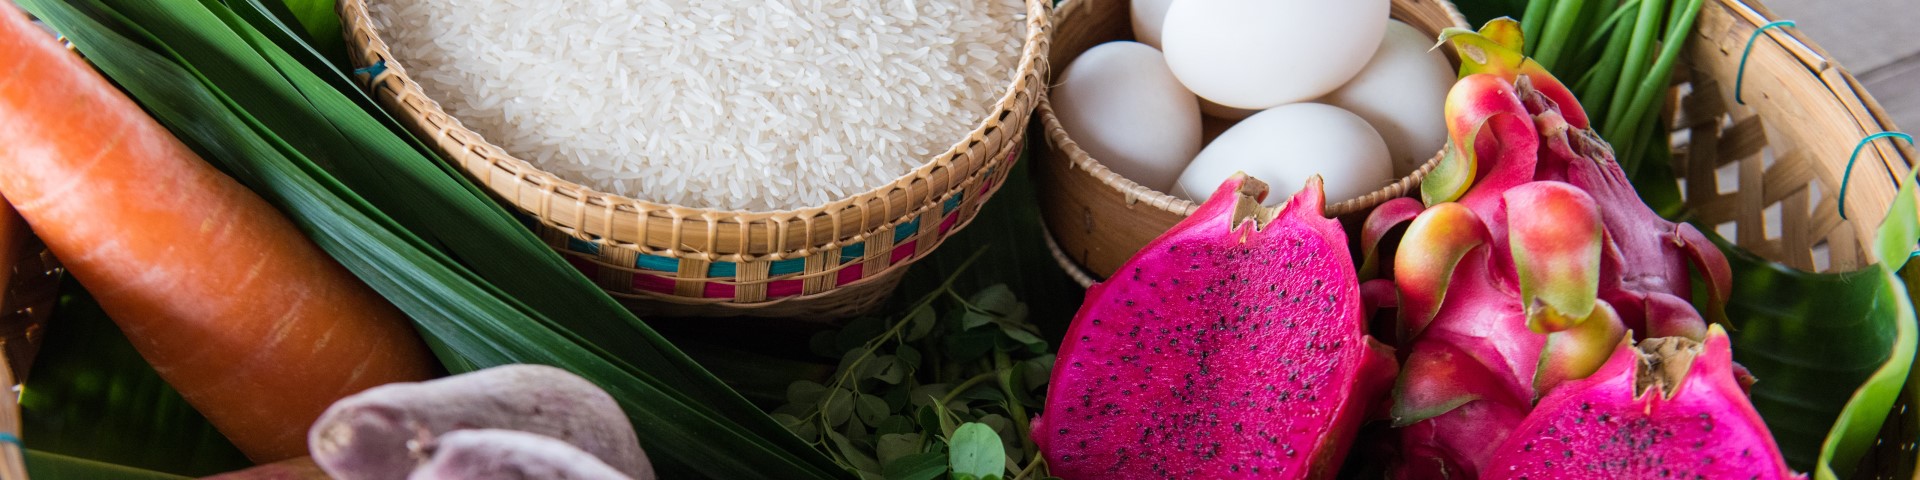 Auf dem Bild ist ein Korb mit Lebensmitteln wie Reis, Eiern und Drachenfrucht abgebildet.